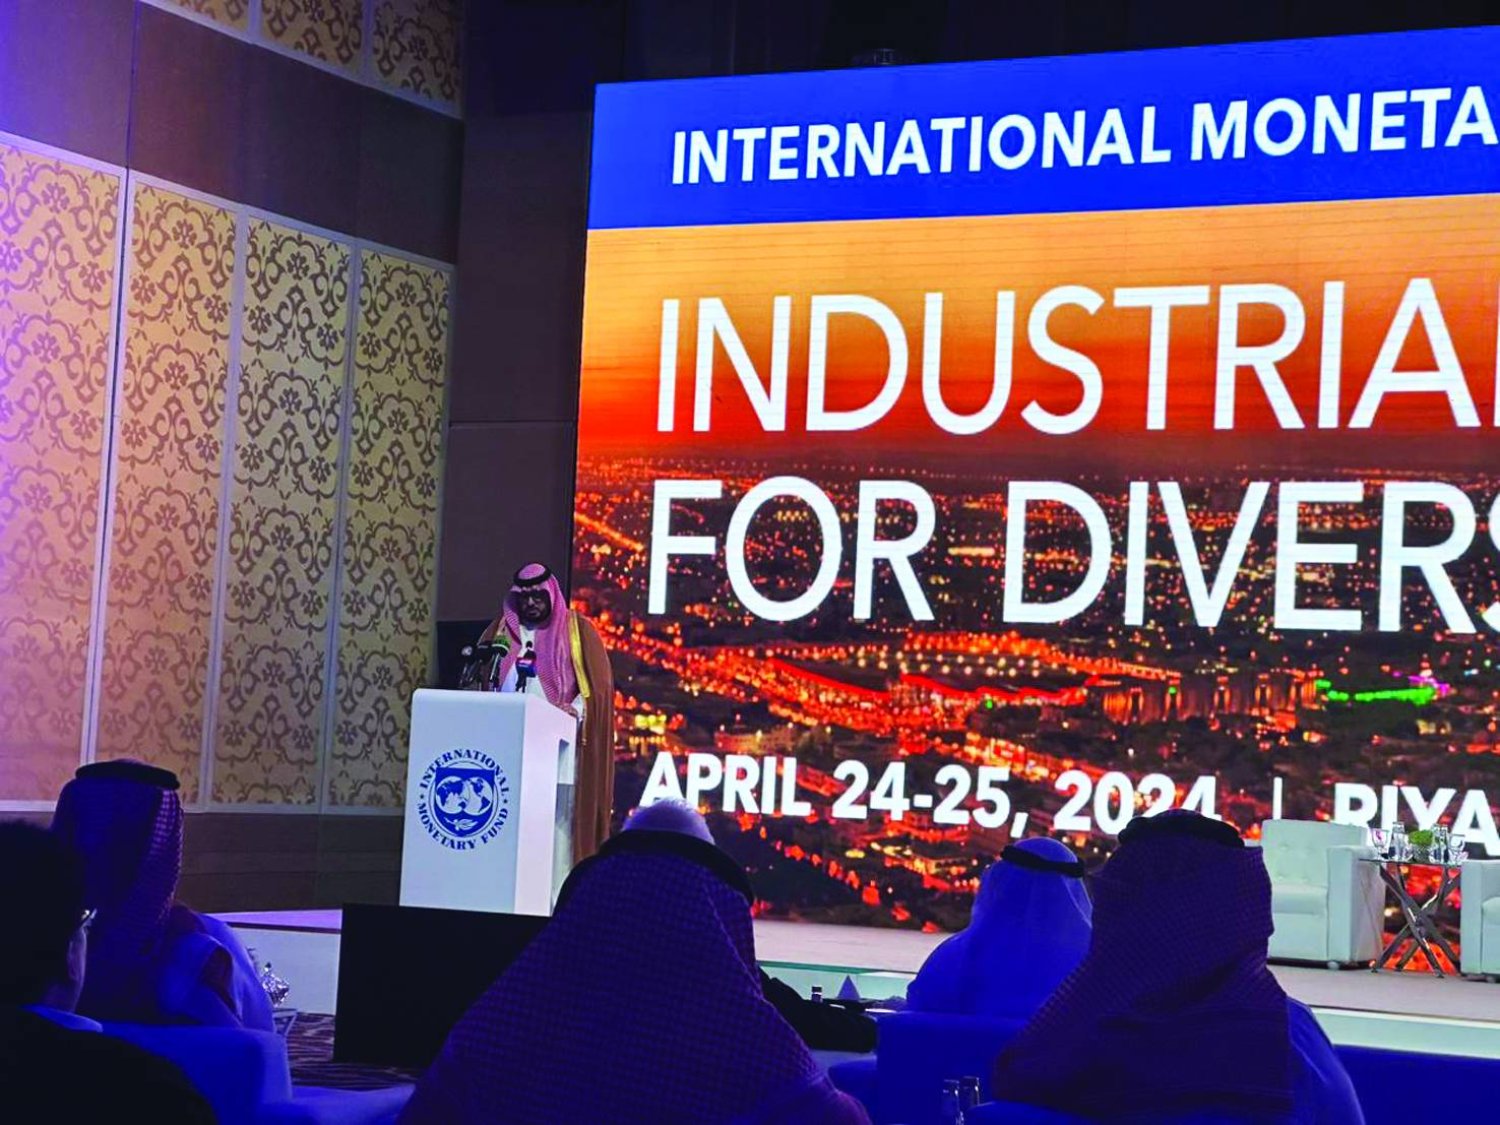 وزير الاقتصاد والتخطيط يلقي كلمته الافتتاحية في مؤتمر صندوق النقد الدولي المقام بمدينة الرياض (الشرق الأوسط)